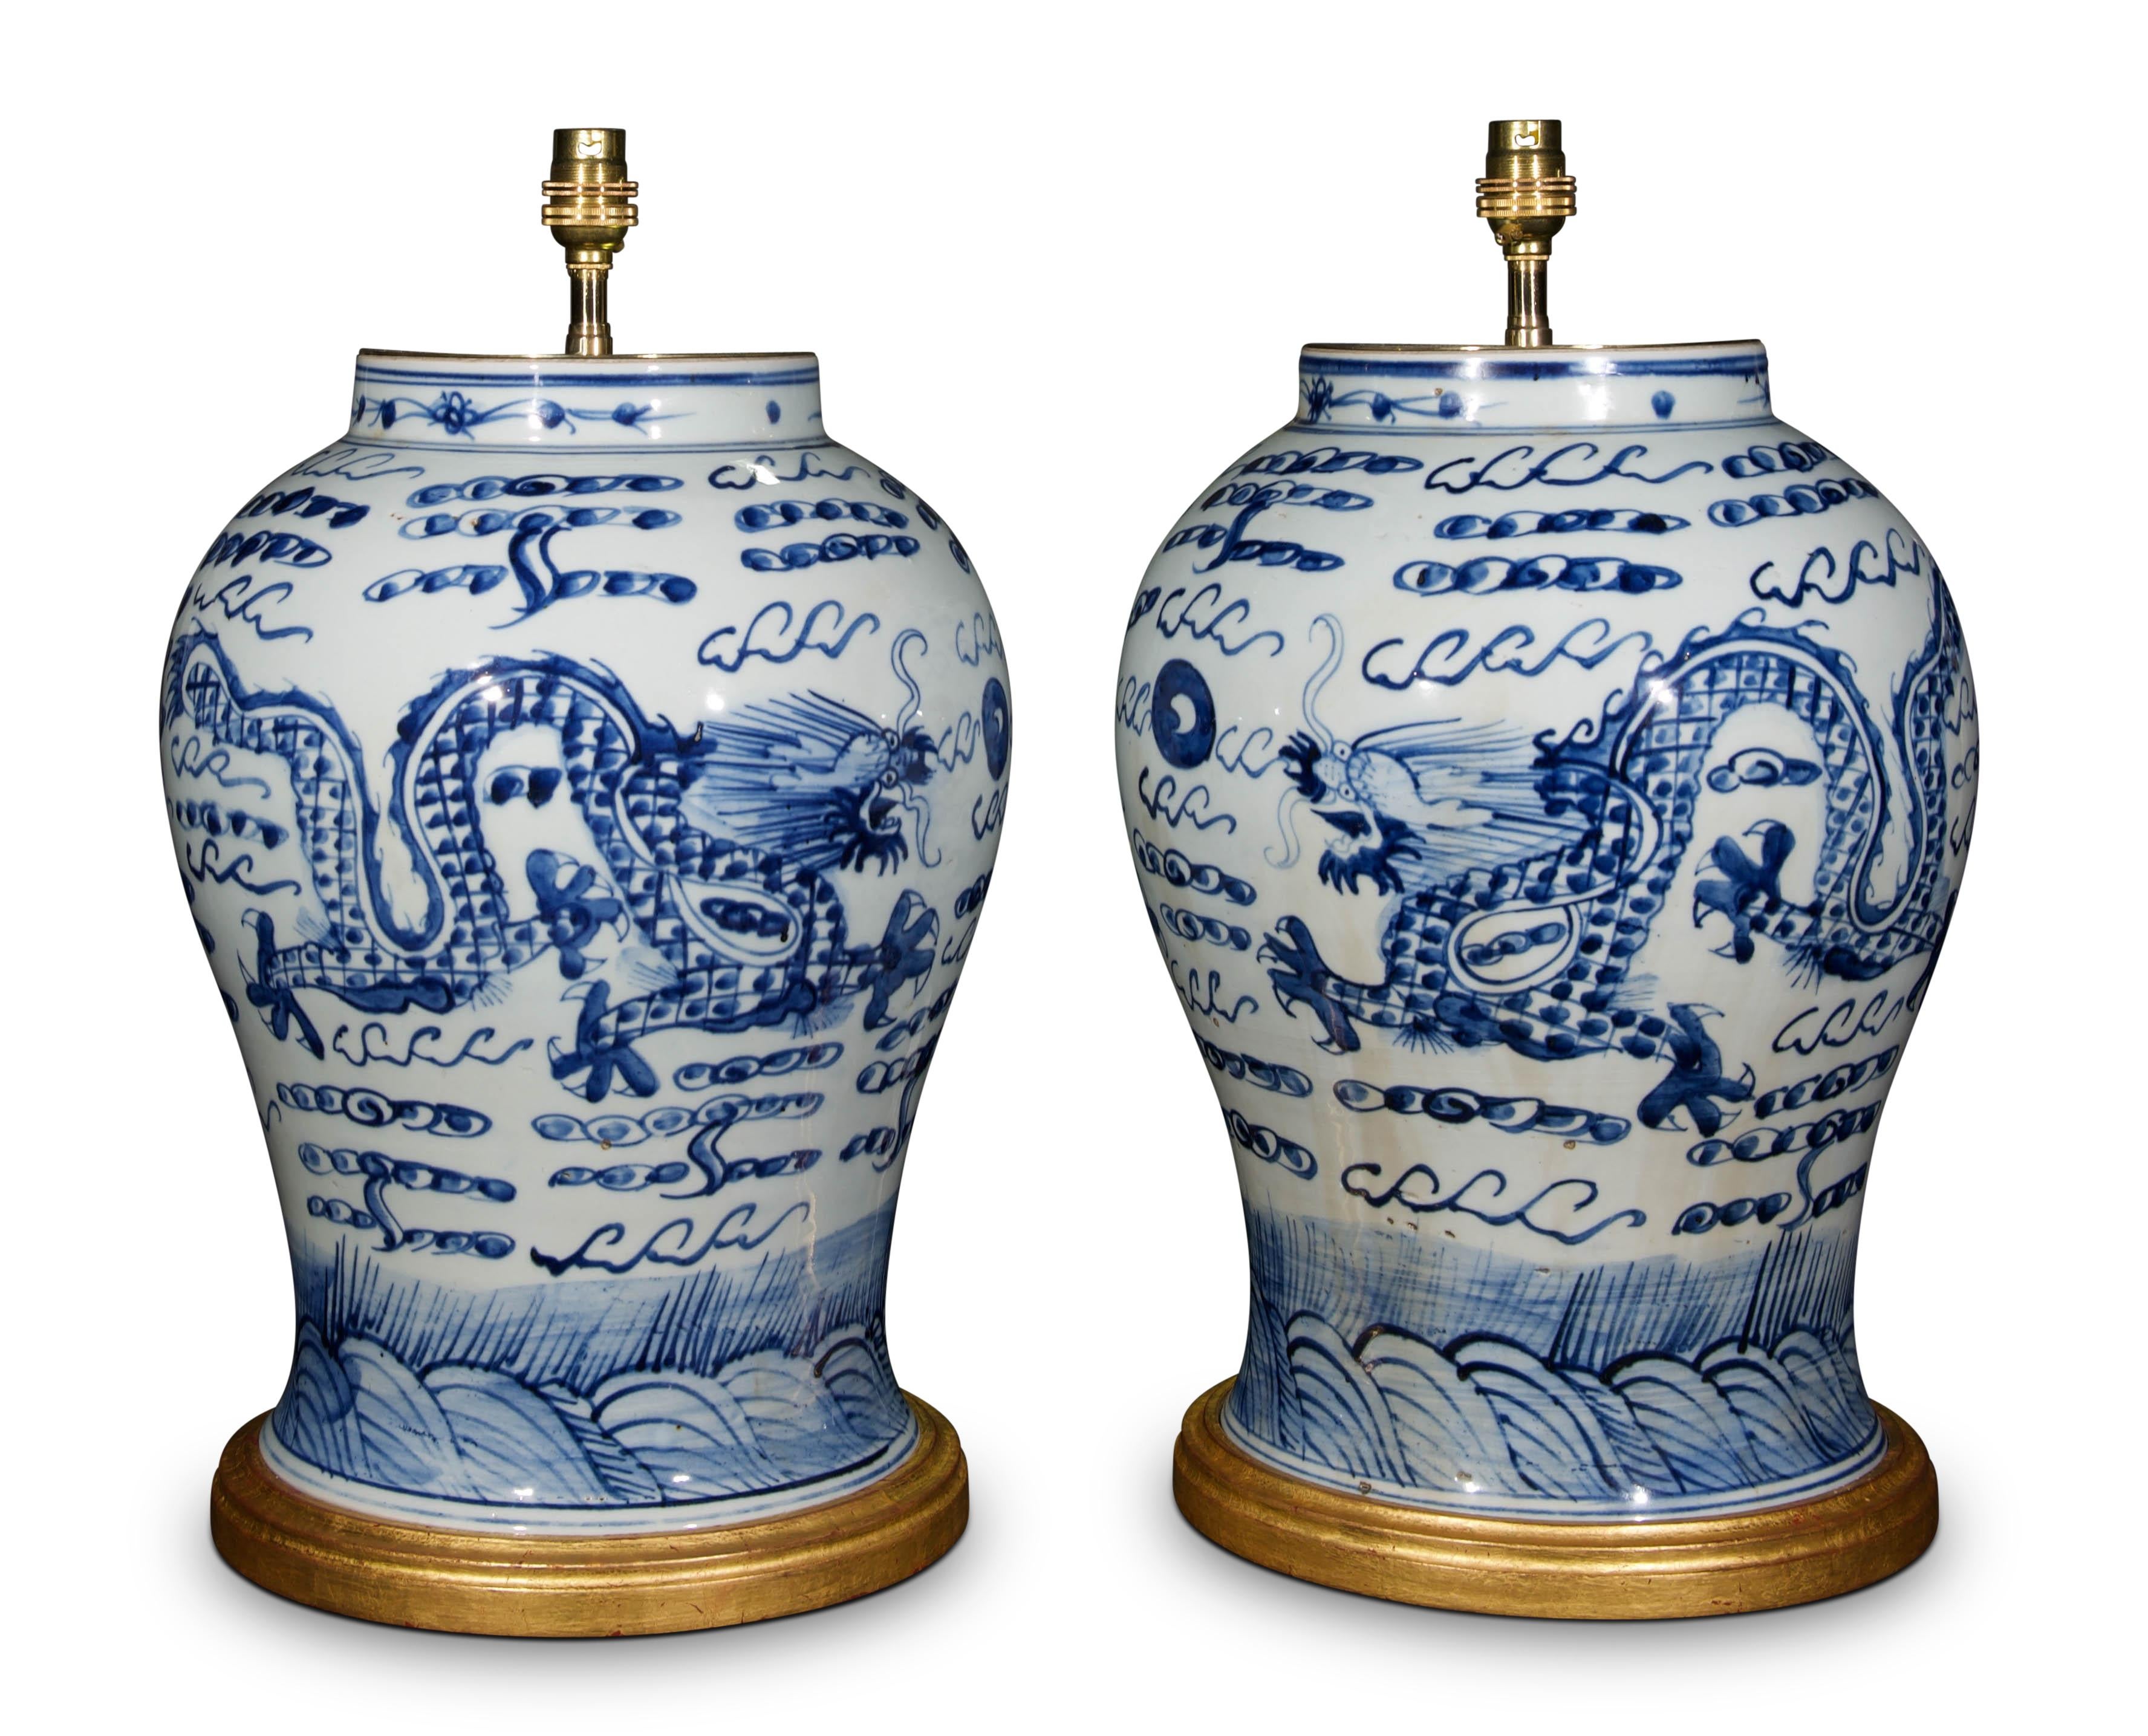 Paire de grands vases balustres chinois en bleu et blanc, décorés dans le style Kangxi, avec des chiens stylisés de Fo dans un paysage feuillu. Ces vases sont maintenant montés comme lampes sur des bases tournées et dorées à la main.

Mesures :